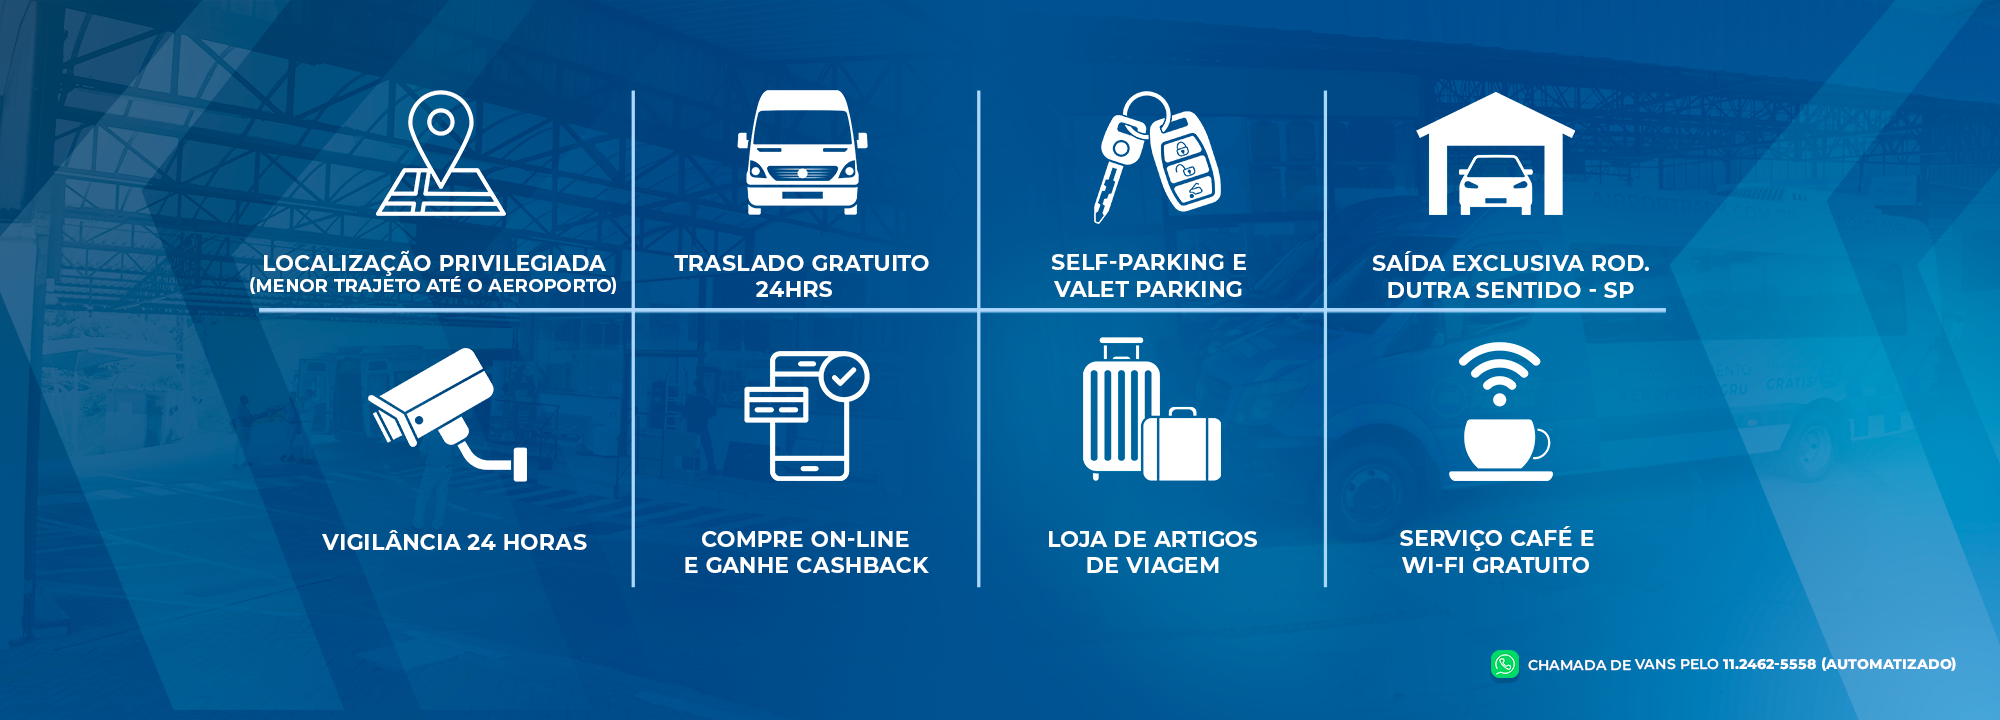 Segurança, Comodidade e Economia - Estacionamento de Guarulhos / Cumbica - GRU